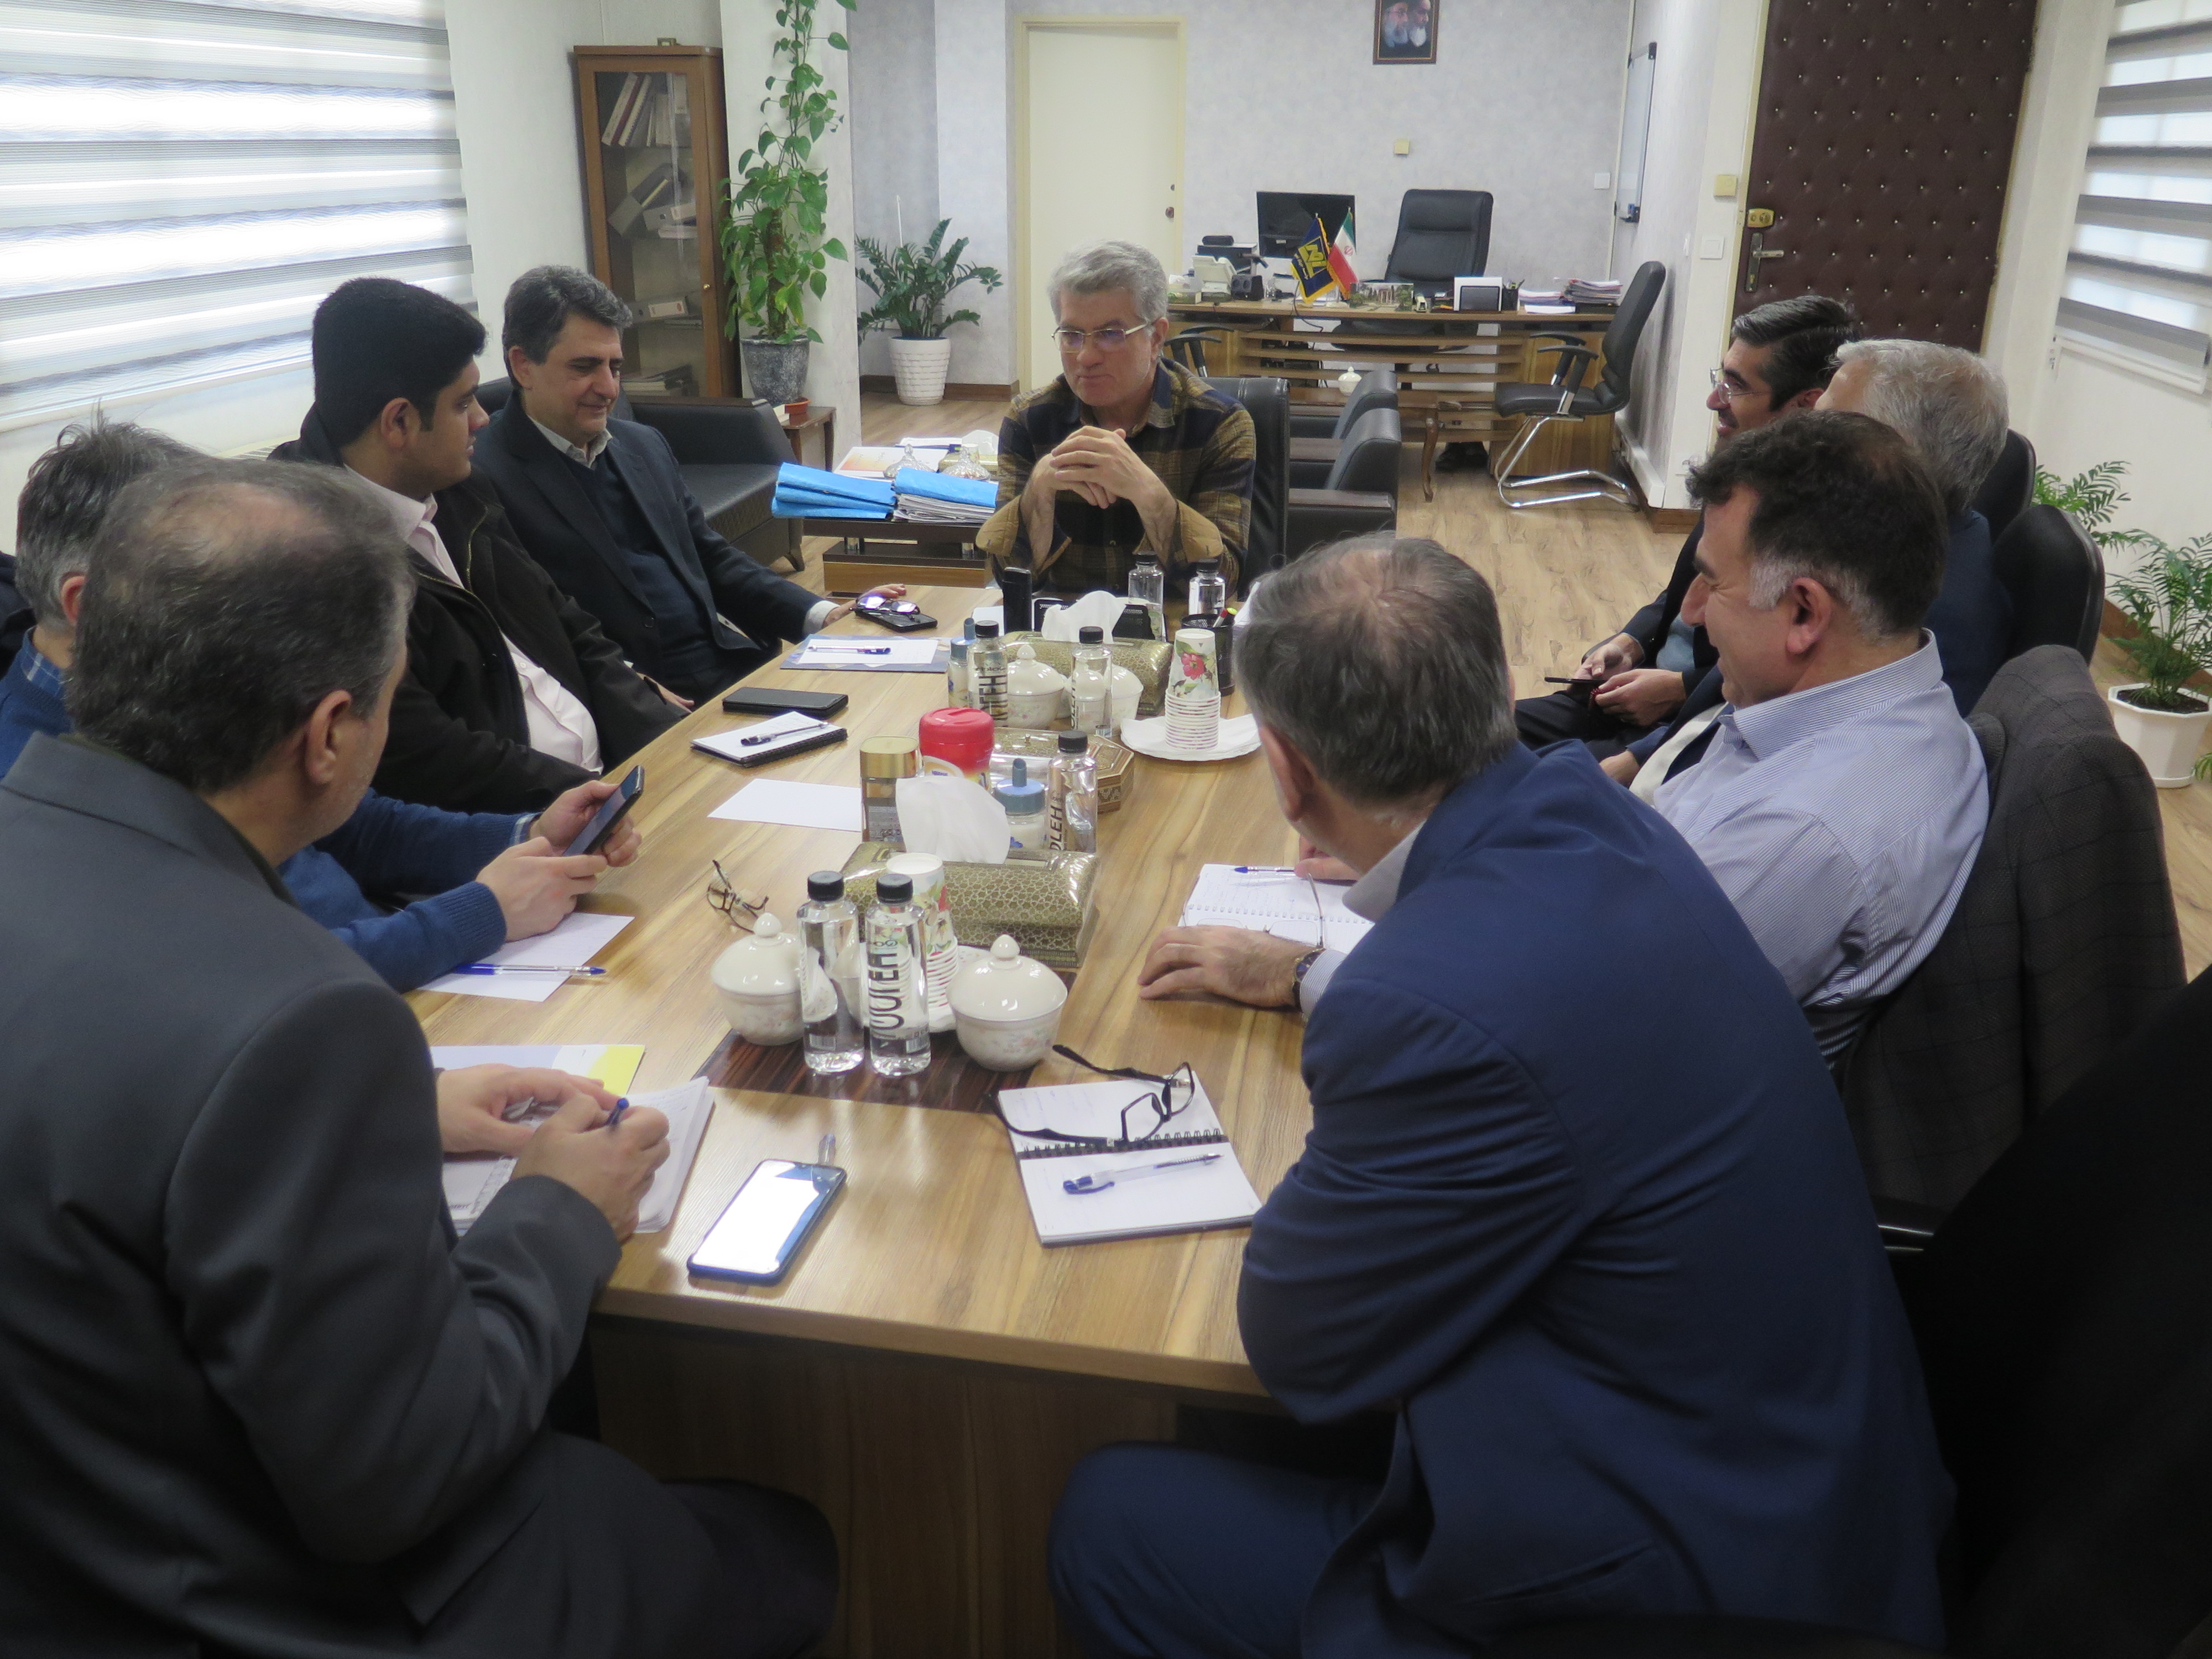 جلسه جهاد تبیین با حضور مدیرعامل موسسه و تعدادی از مدیران برگزار گردید.